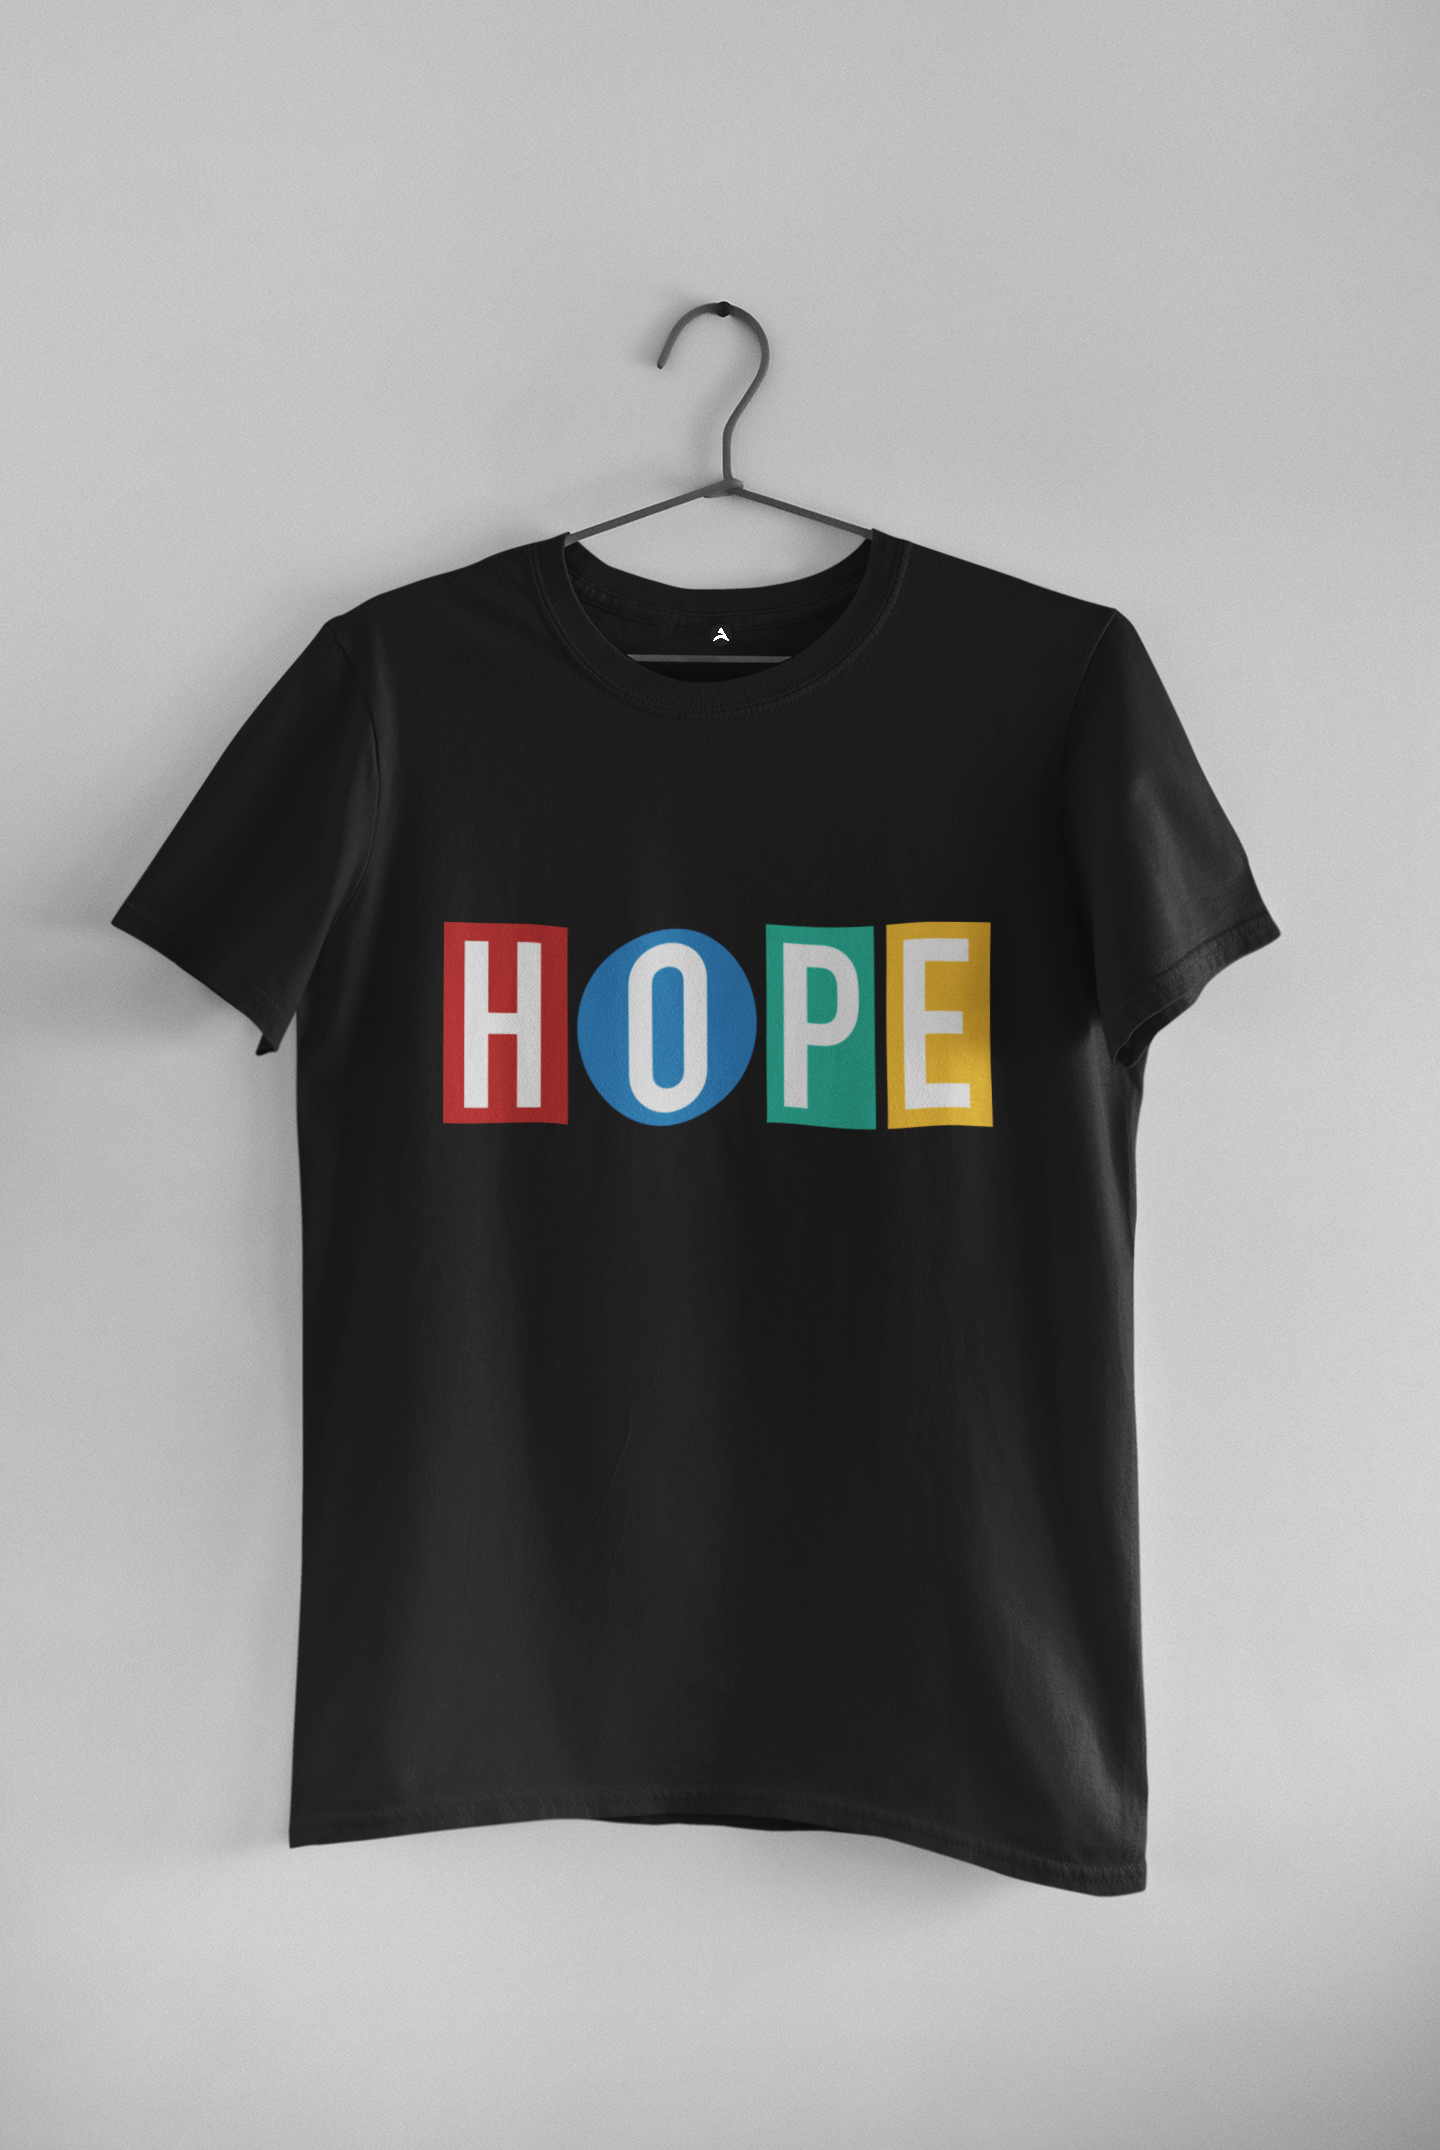 HOPE - J HOPE : BTS - HALF-SLEEVE T-SHIRTS BLACK